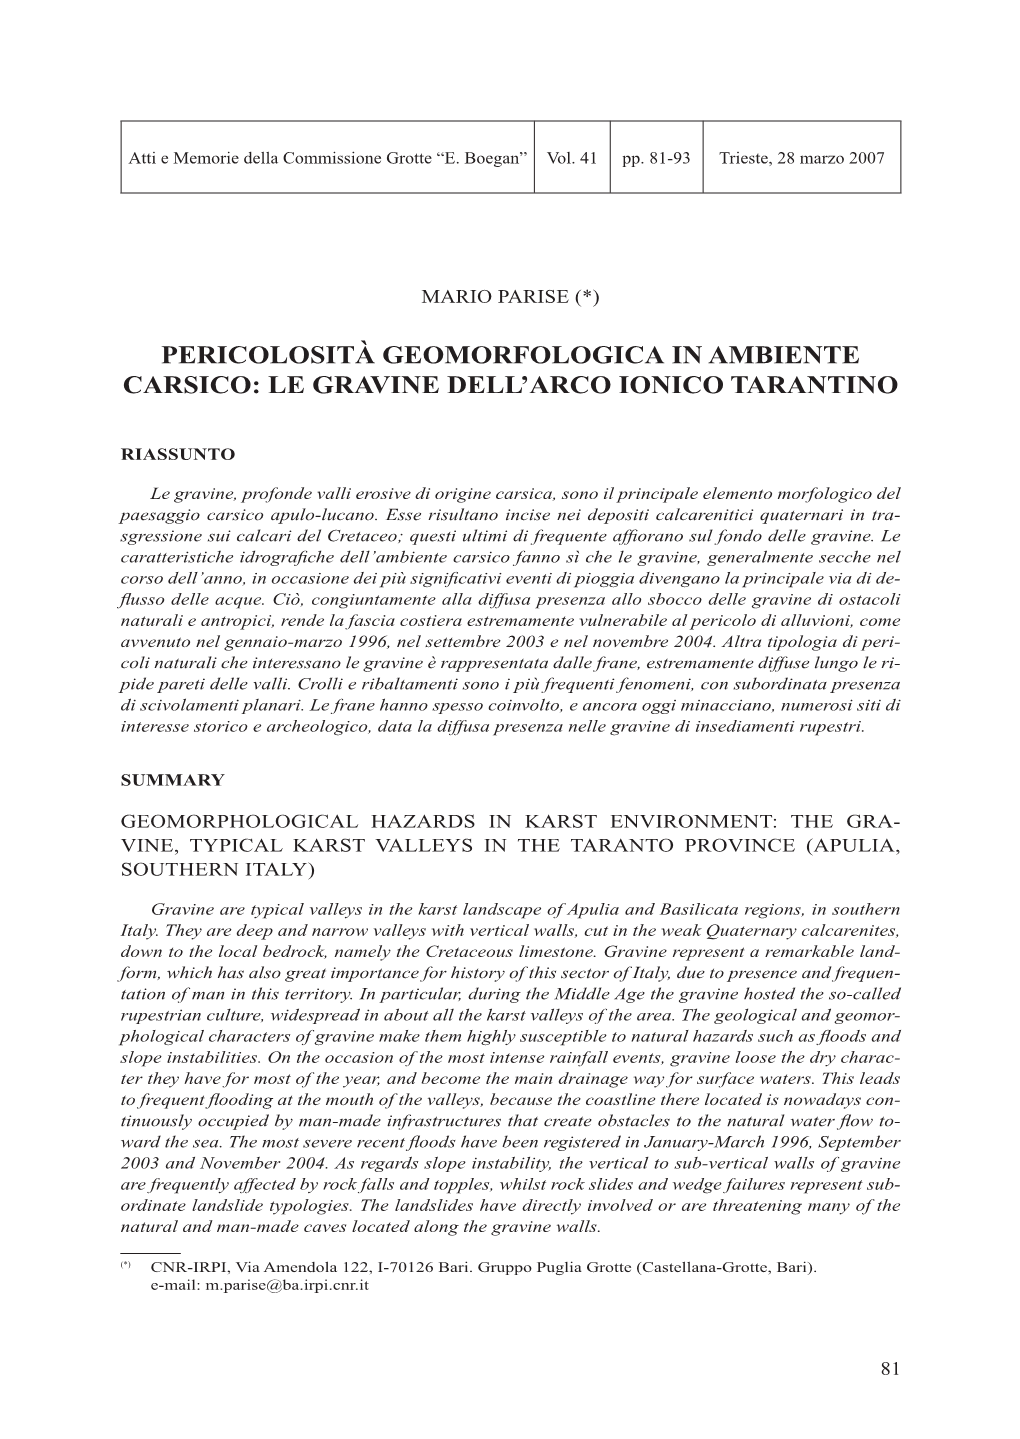 Pericolosità Geomorfologica in Ambiente Carsico: Le Gravine Dell’Arco Ionico Tarantino